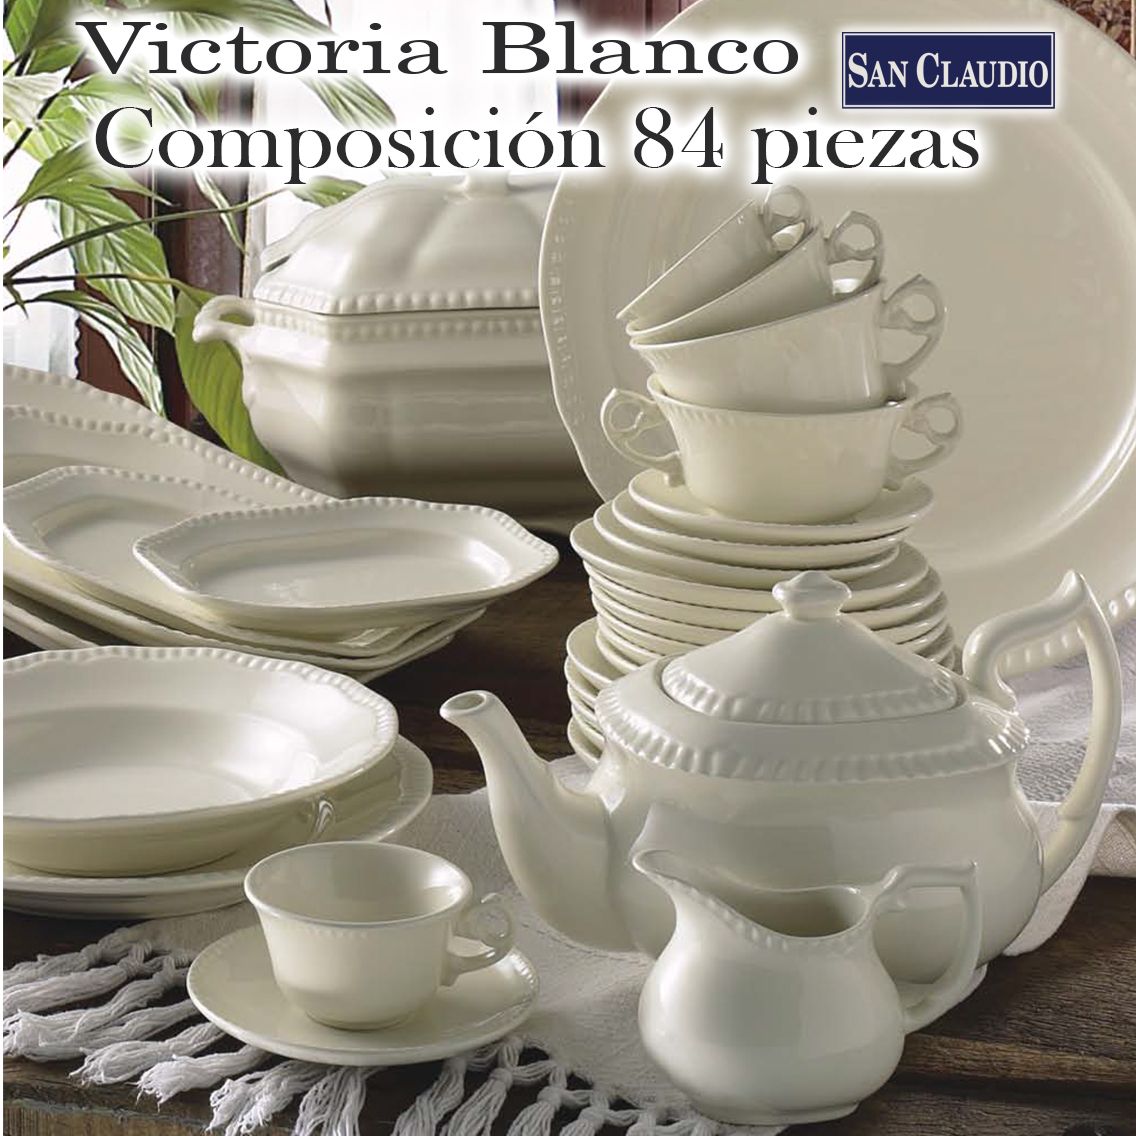 Vajilla + Juego Café 84 piezas Victoria Blanco San Claudio loza